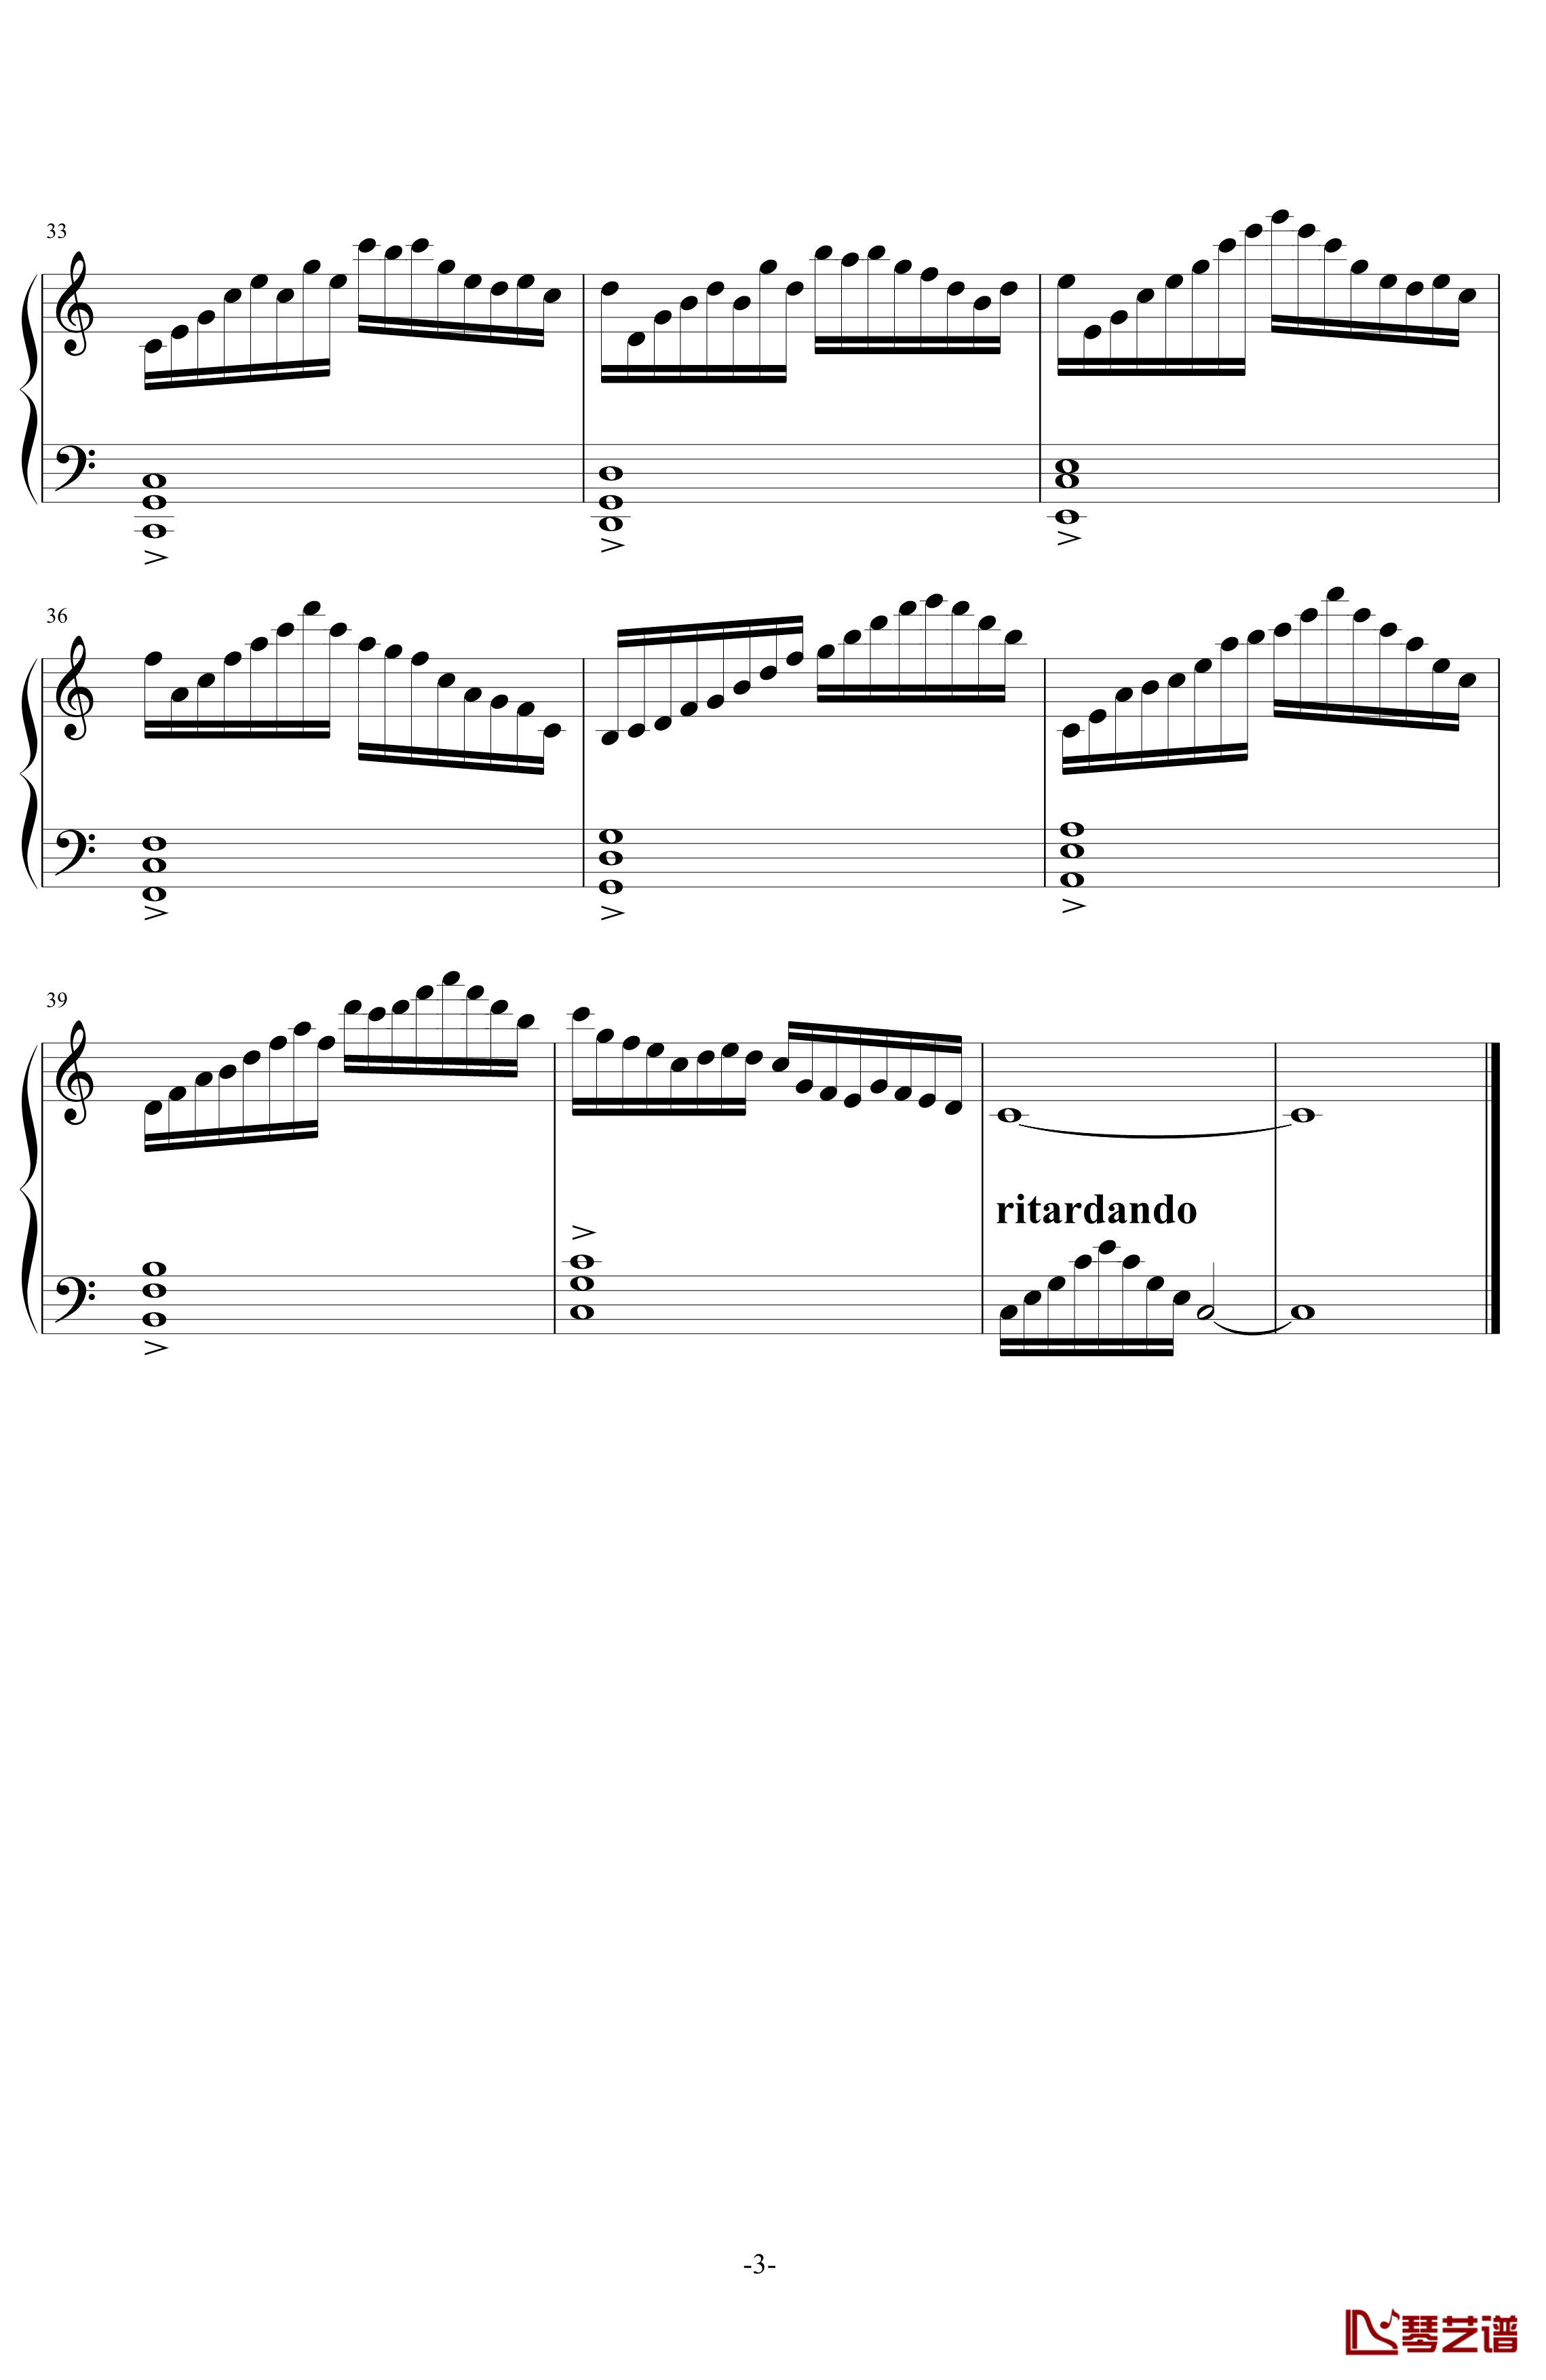 缓音律C大调 No.1钢琴谱-初版-舍勒七世3